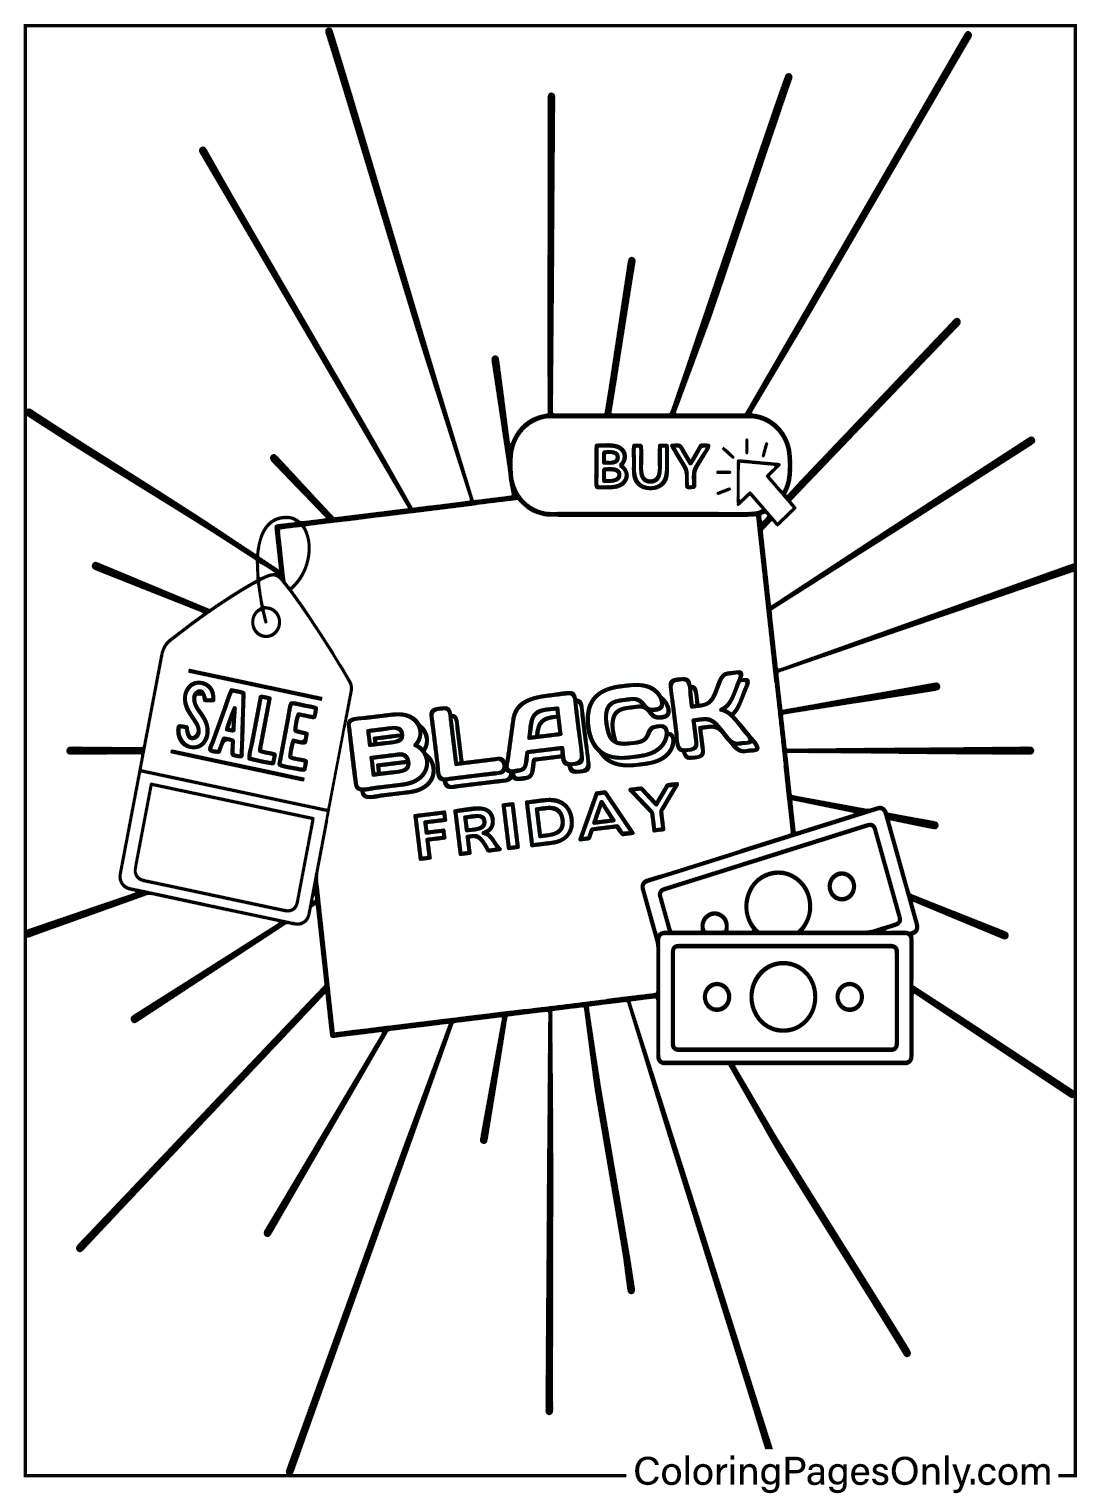 Dibujos para colorear del Black Friday para imprimir desde el Black Friday